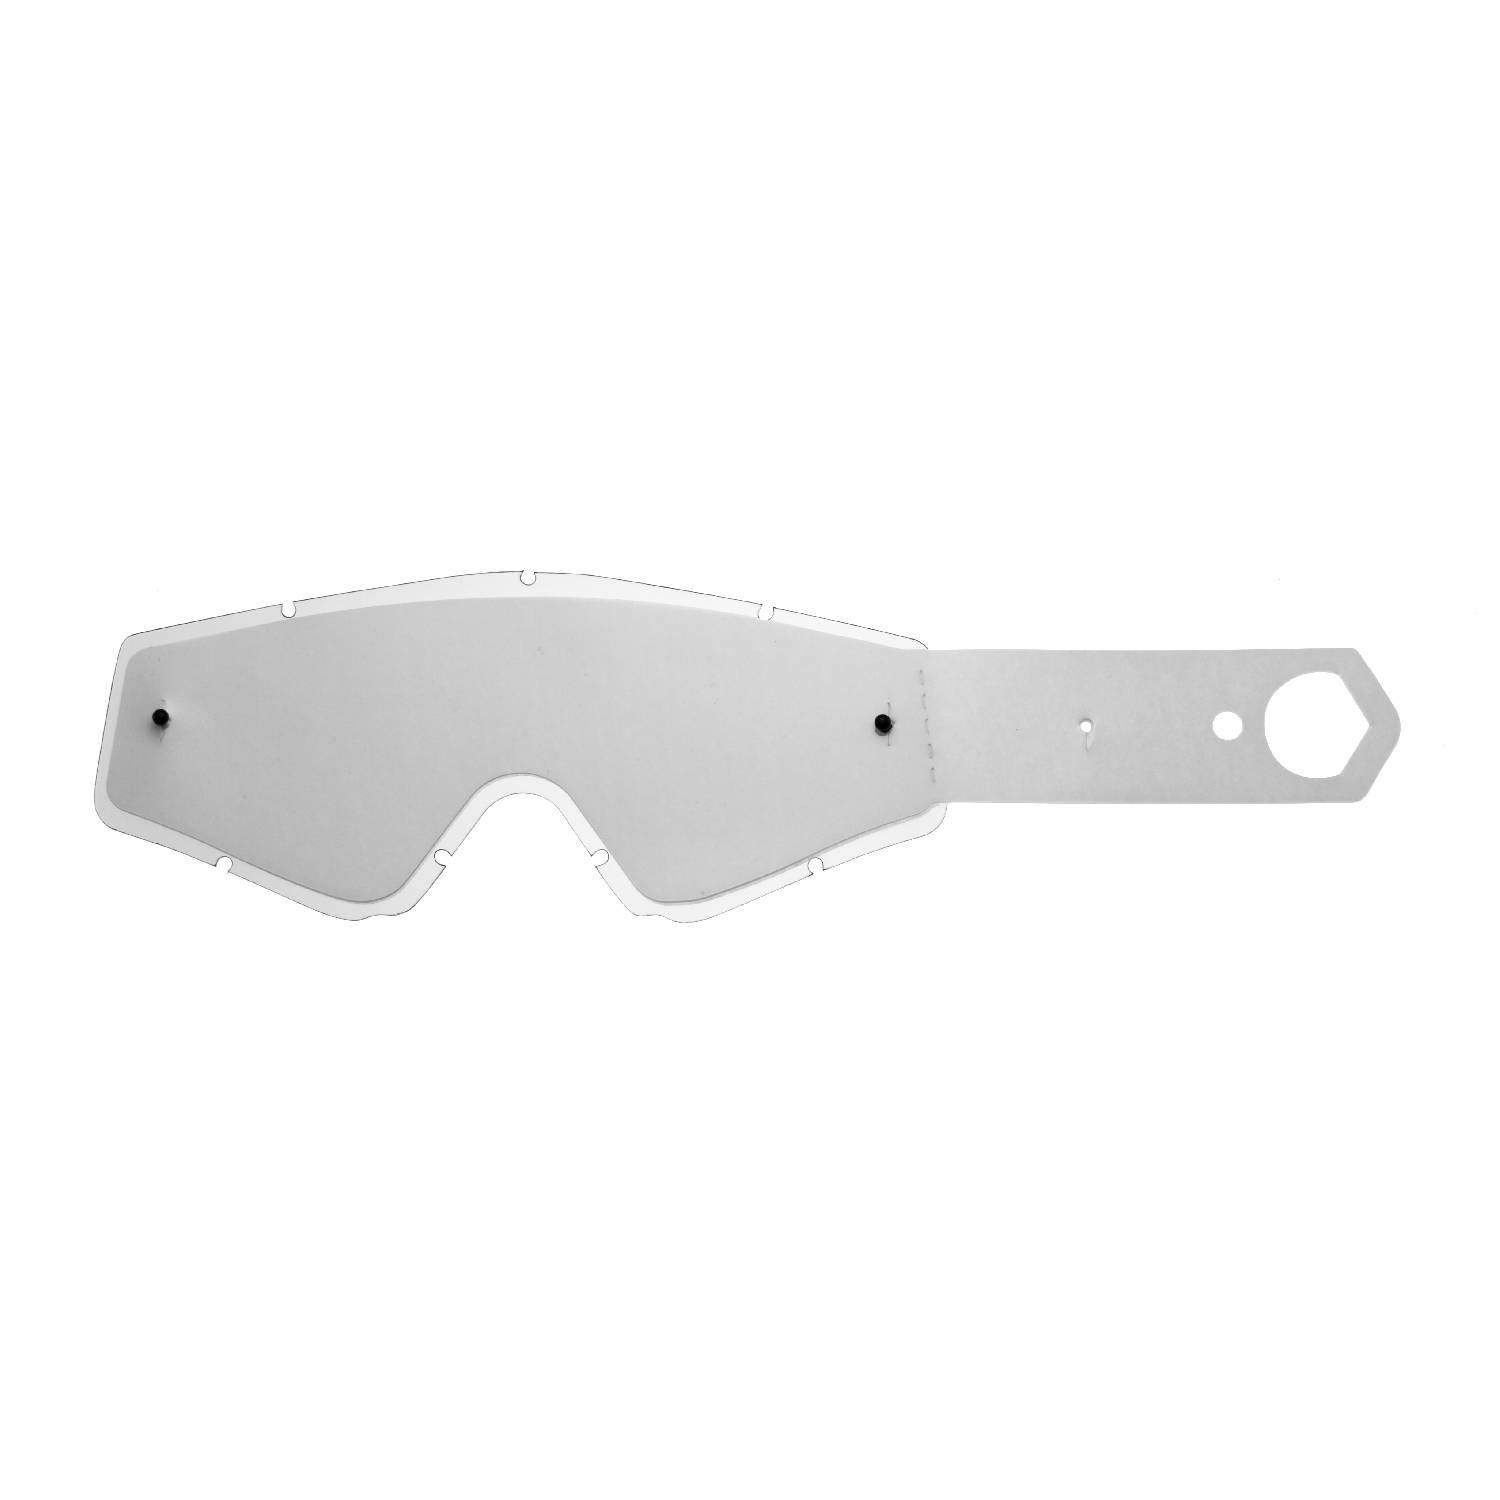 Lente trasparente + 10 Strappi (Combo) compatibile per occhiale/maschera Spy Omen